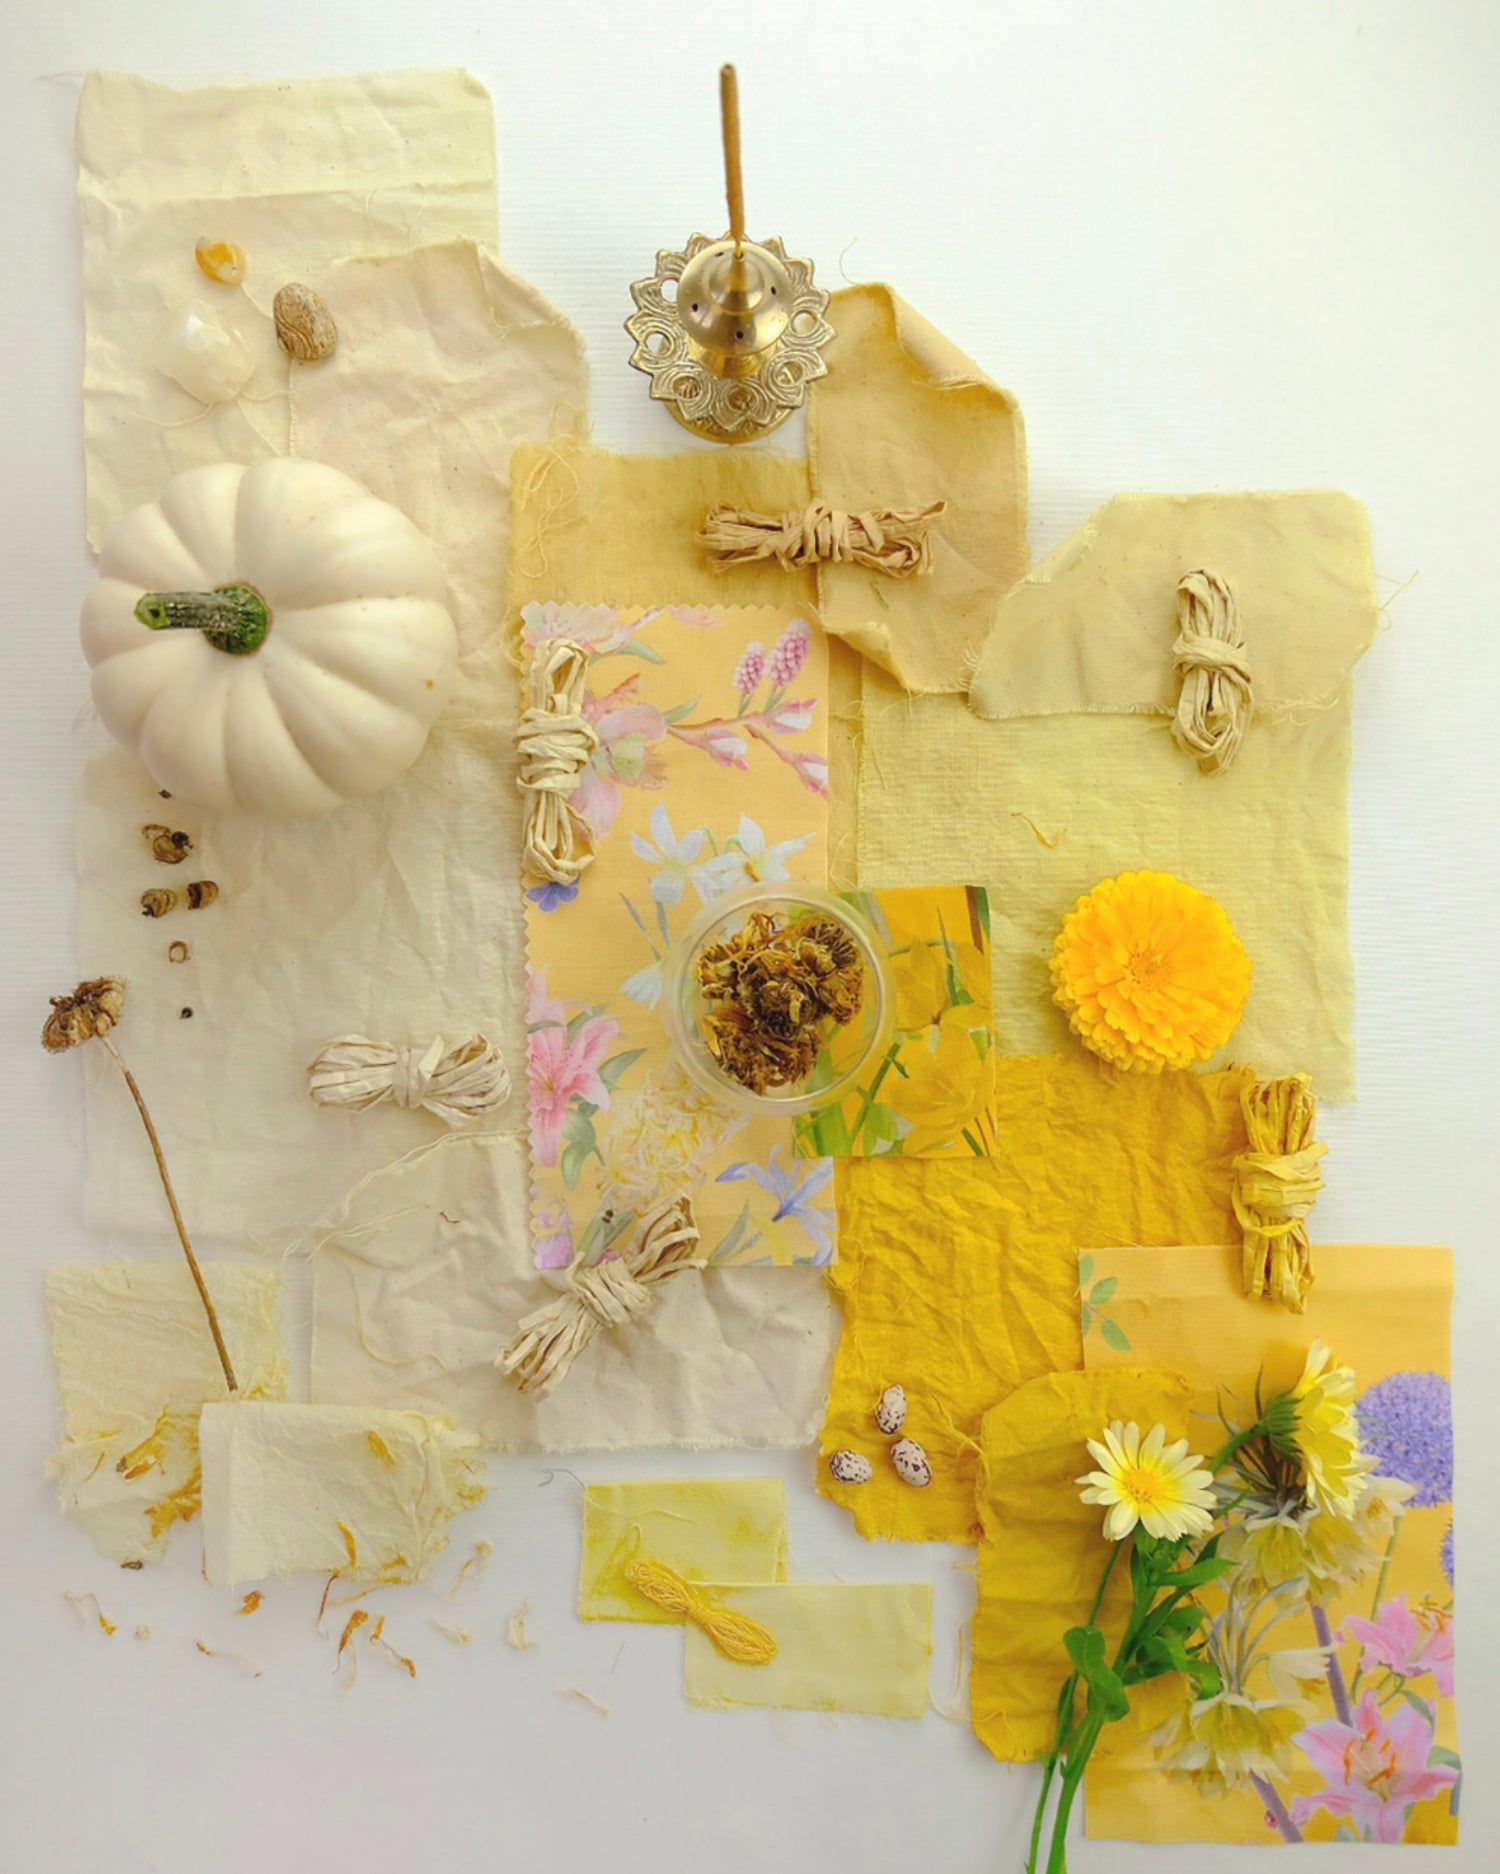 medicinal natural dyes using marigold calendula petals and leaves